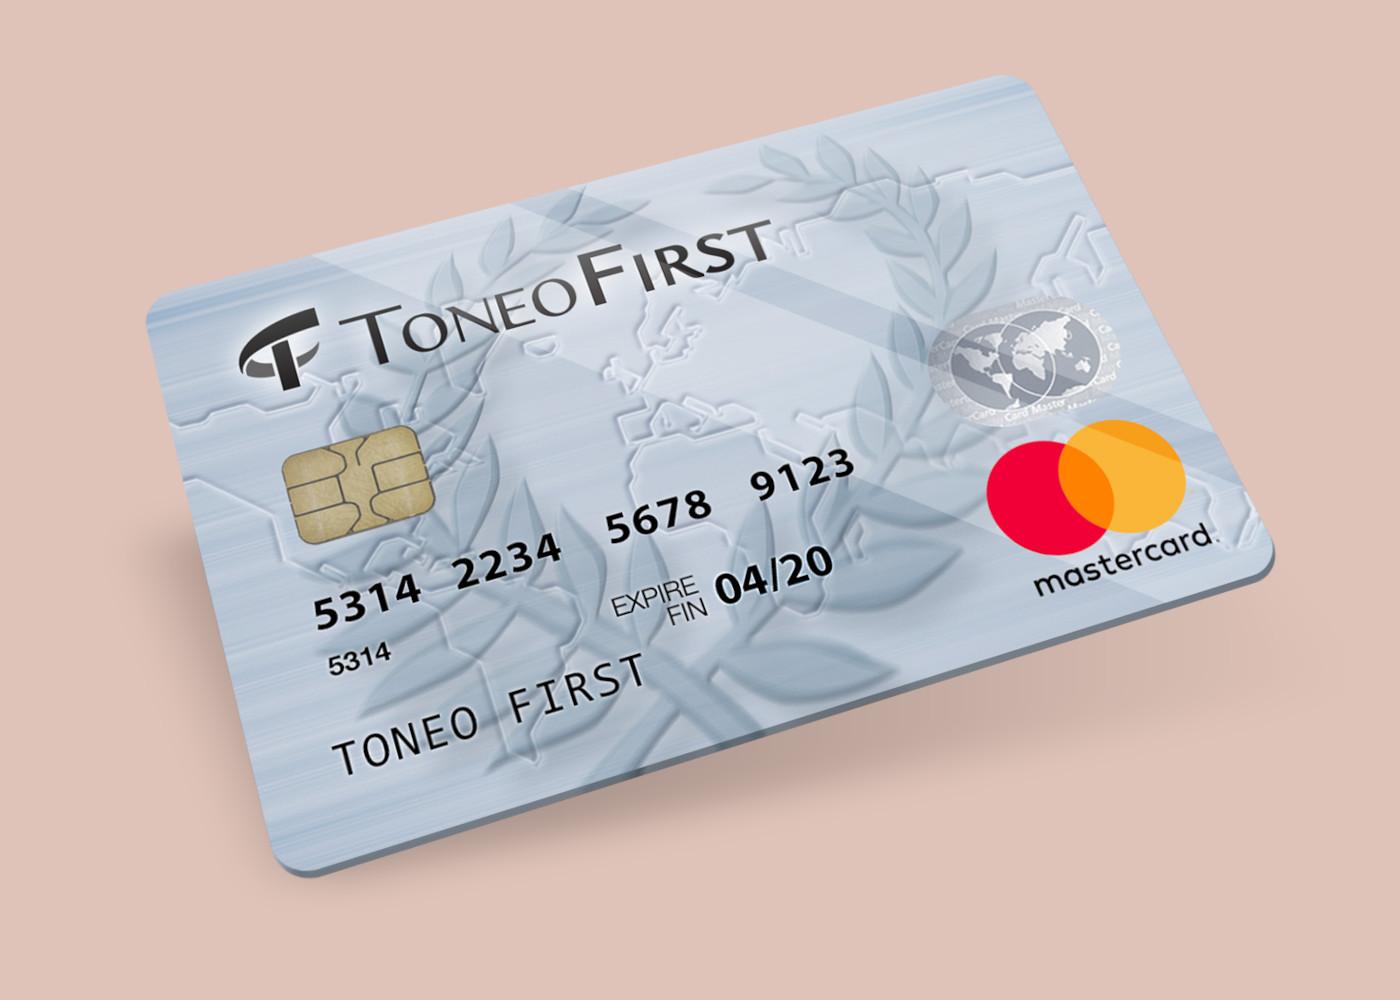 [$ 19.63] Toneo First Mastercard €15 Gift Card EU